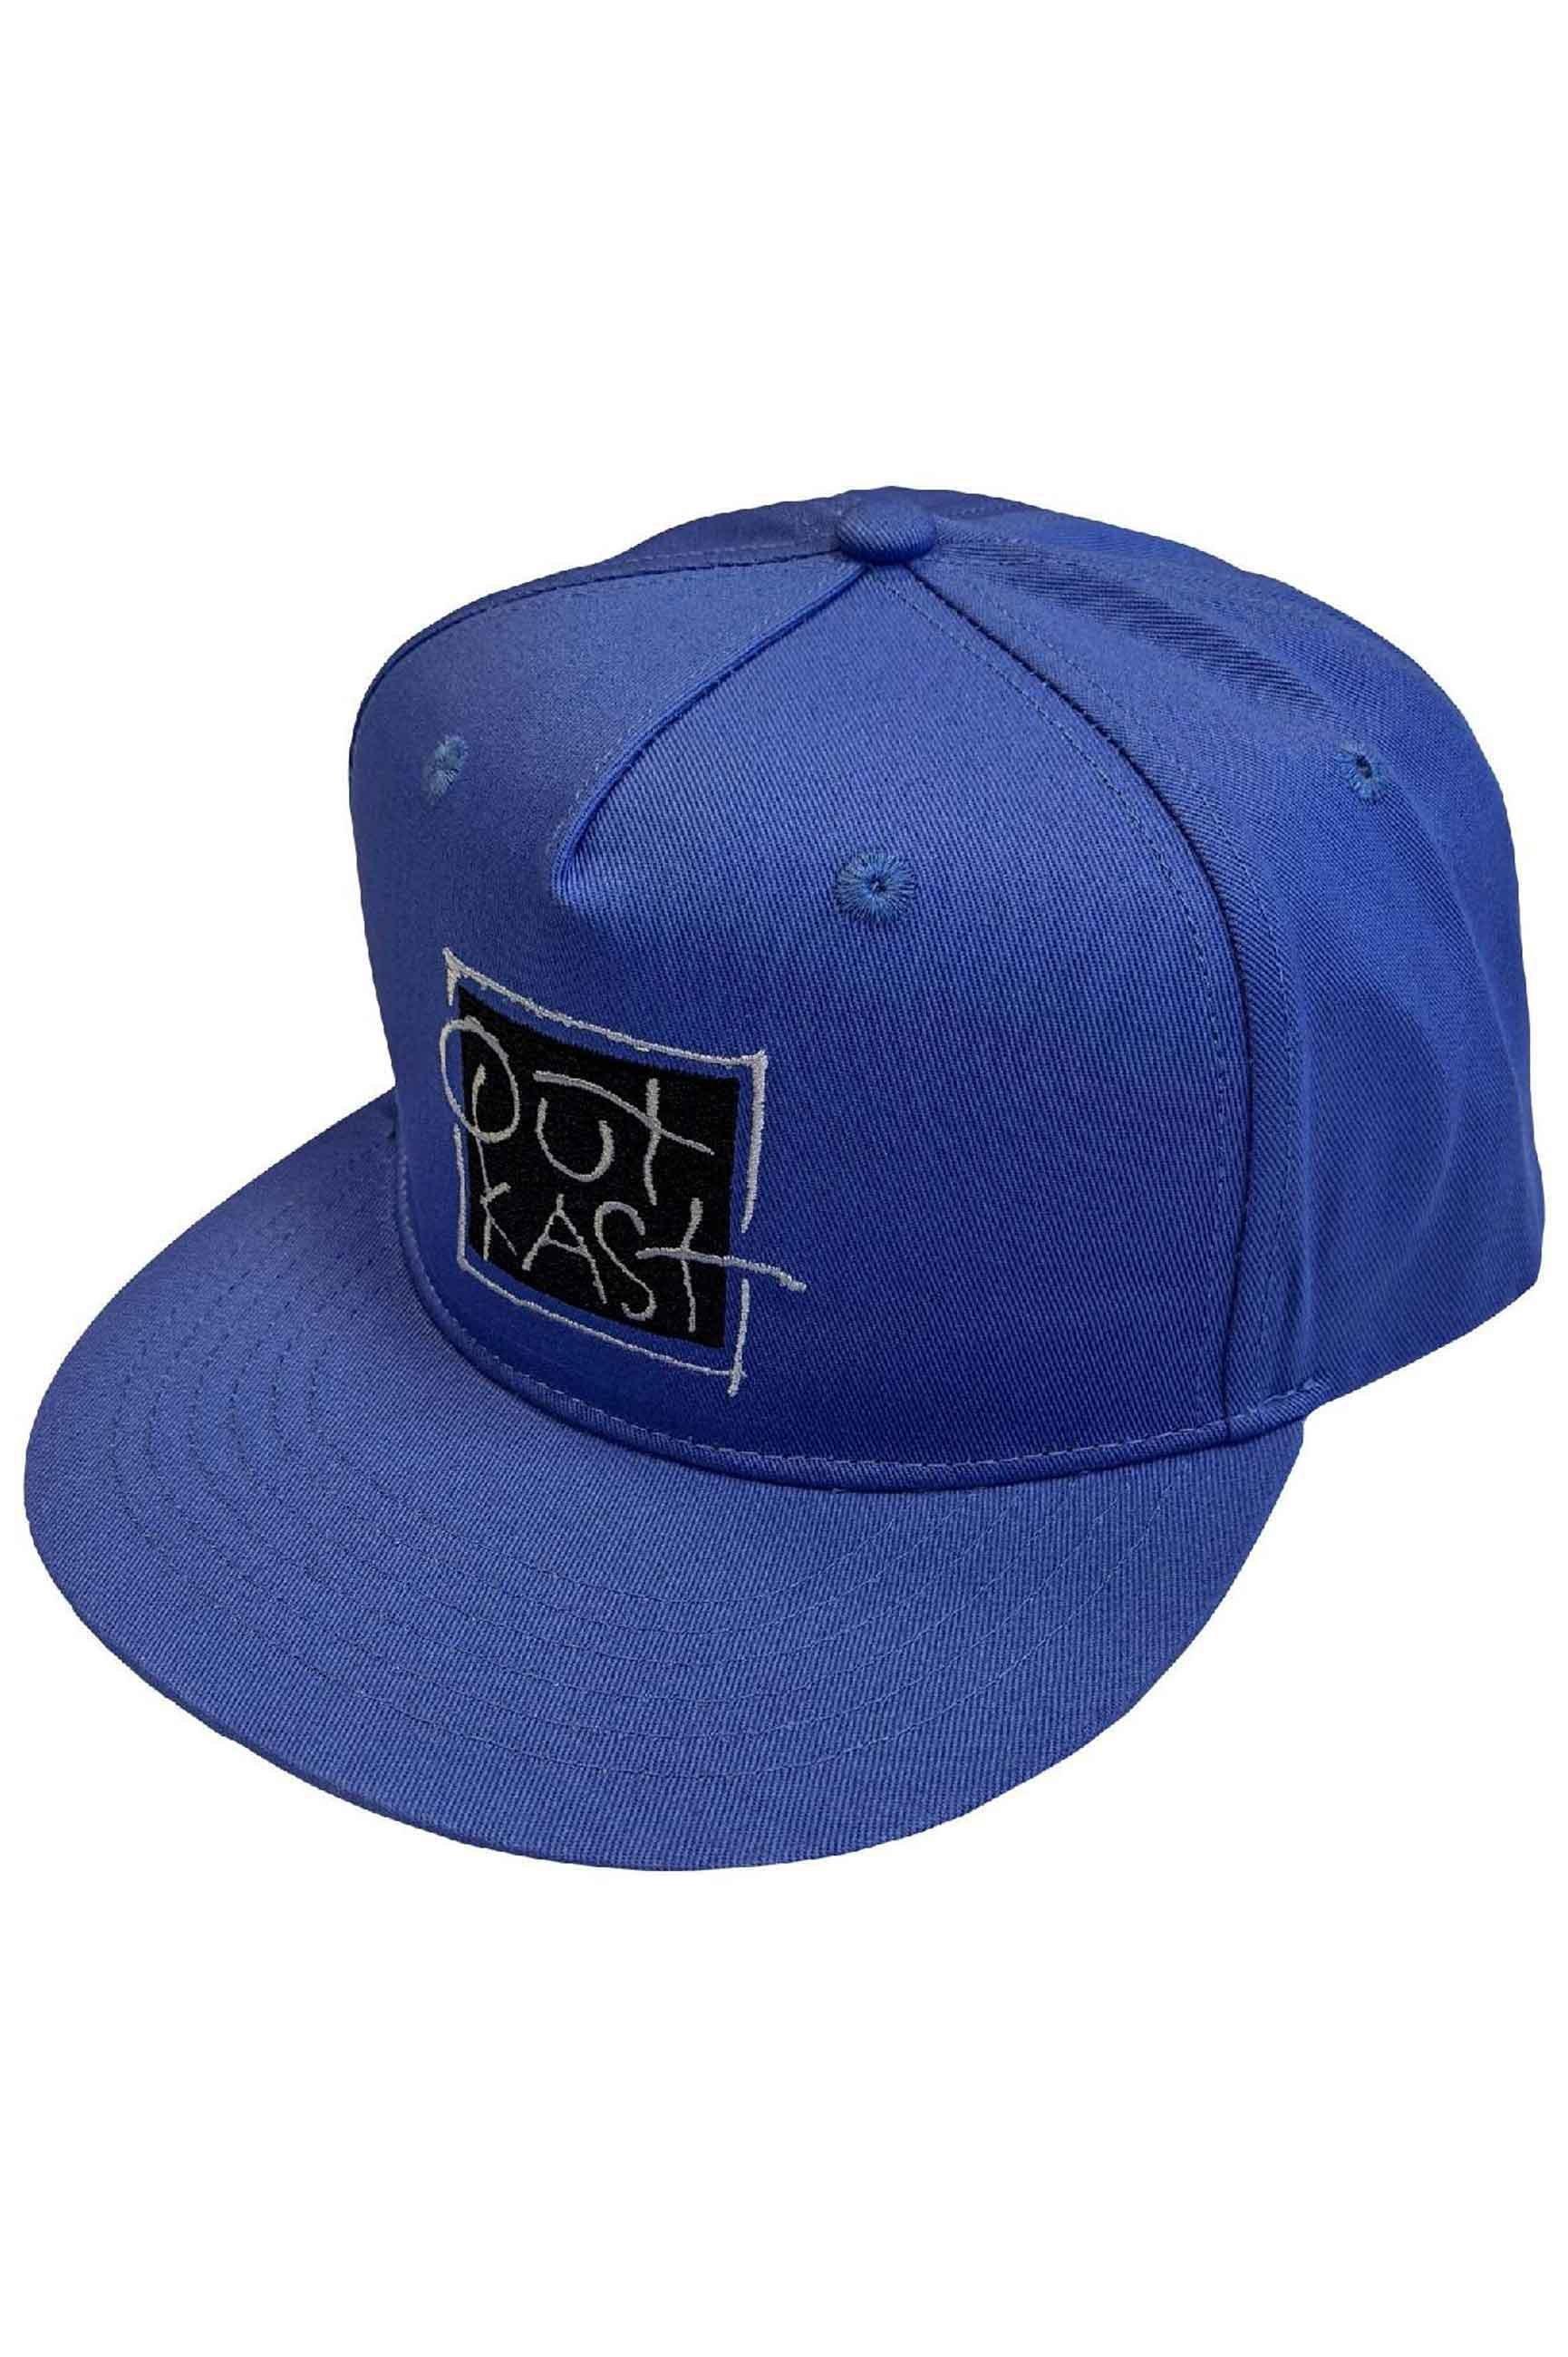 Бейсбольная кепка Snapback с логотипом Box Outkast, синий кепка ncis с вышивкой кепка с логотипом спецагентов кепка с логотипом военно морской полиции кепка кино кепка регулируемая бейсболка кепка